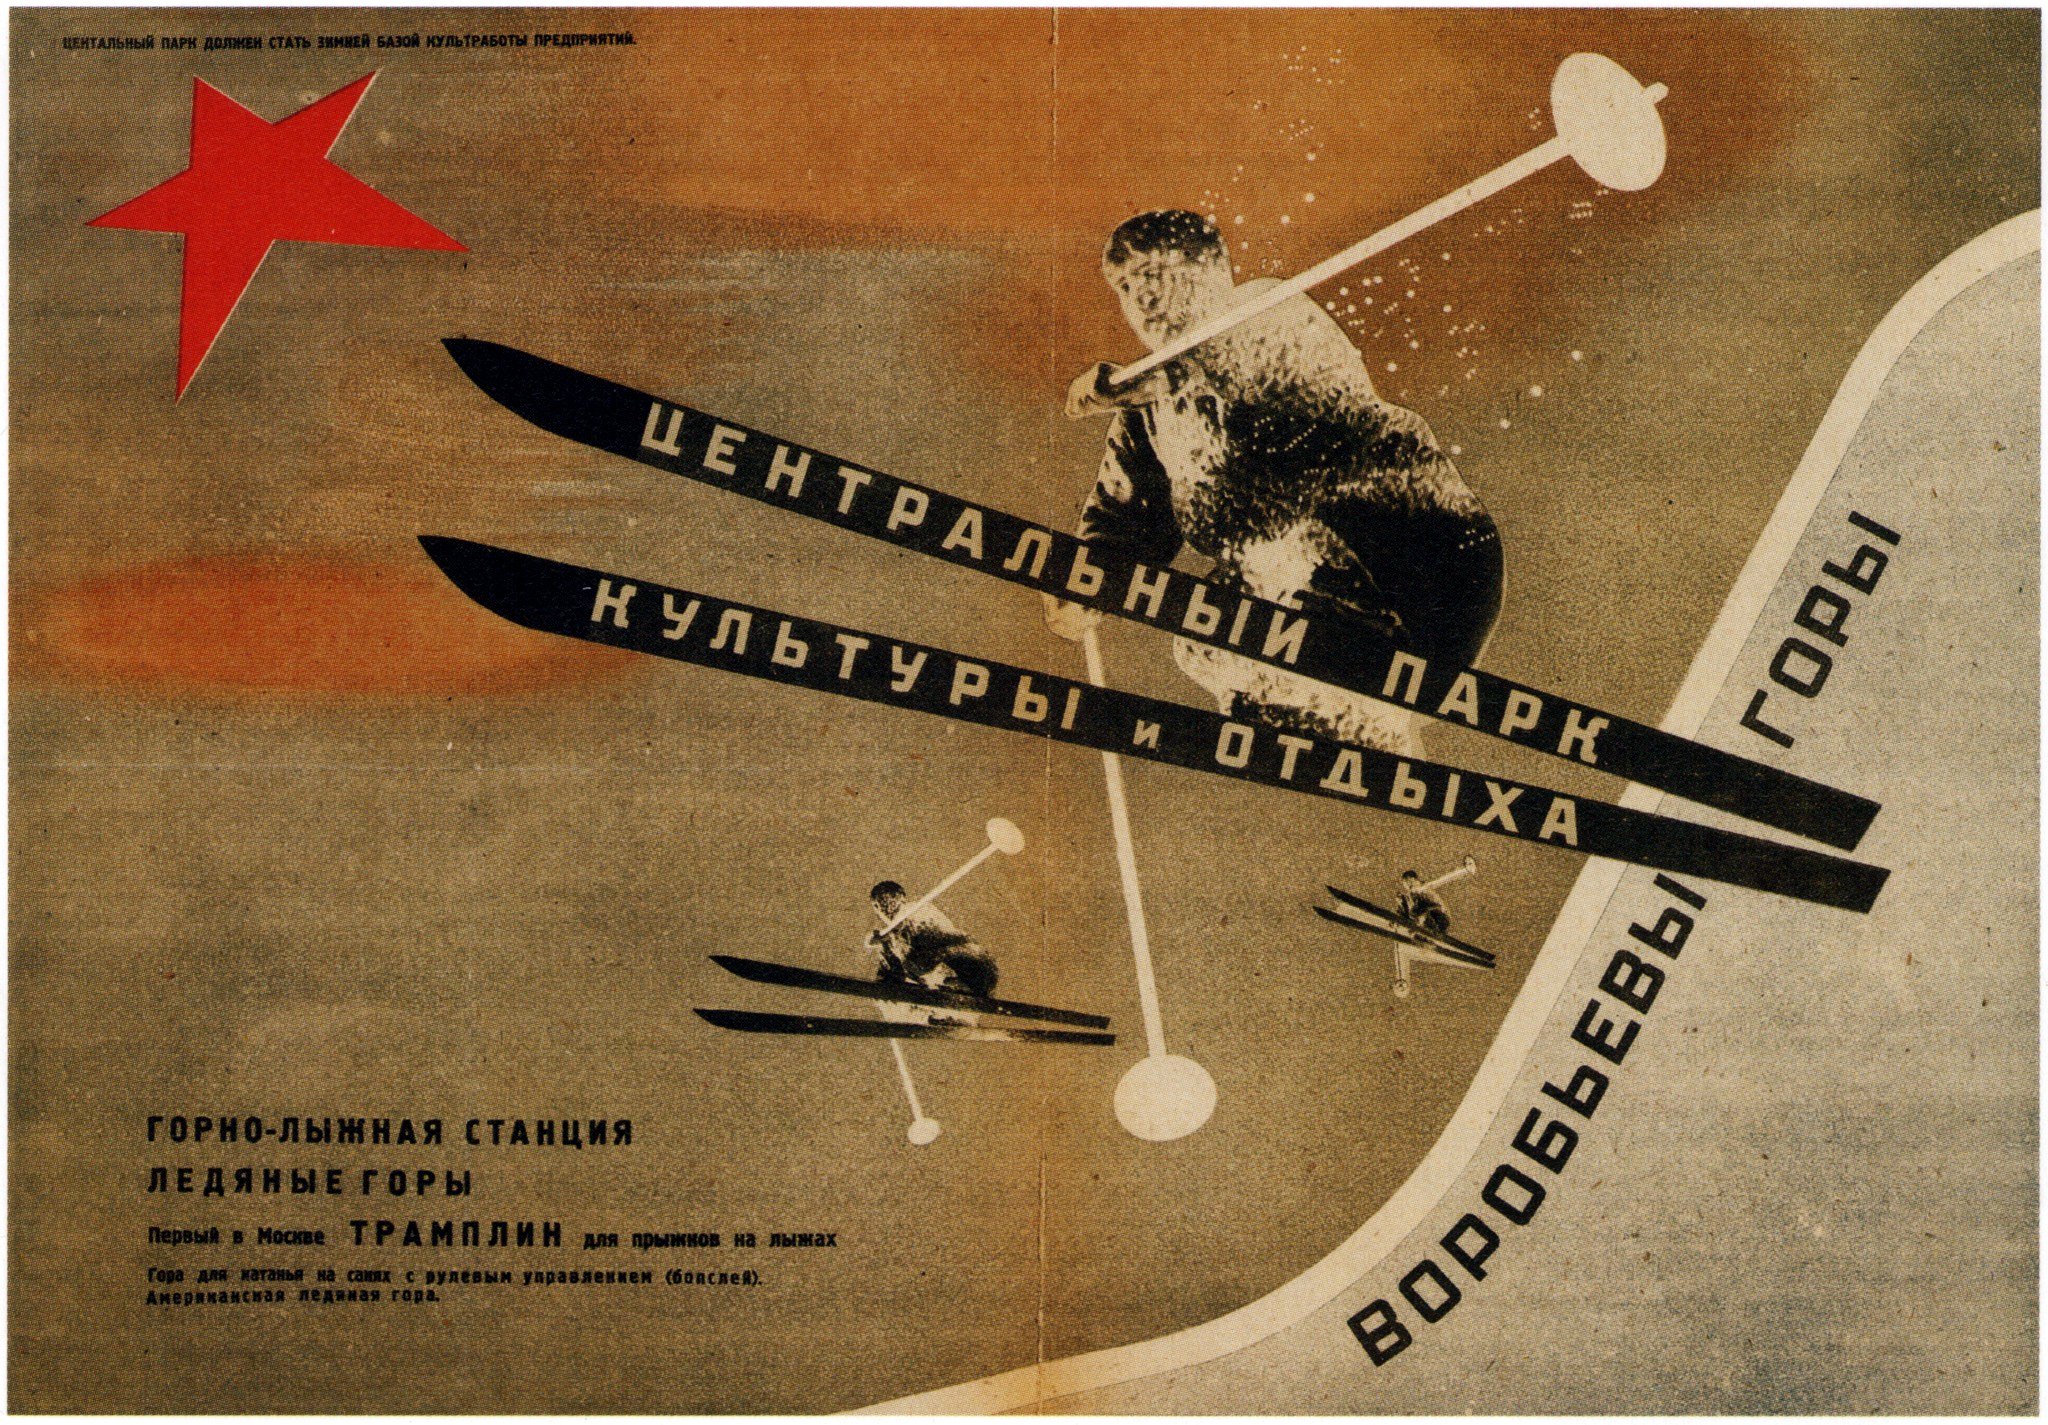 Parque Central de la Cultura Gorky by El Lissitzky - 1931 - - Colección privada